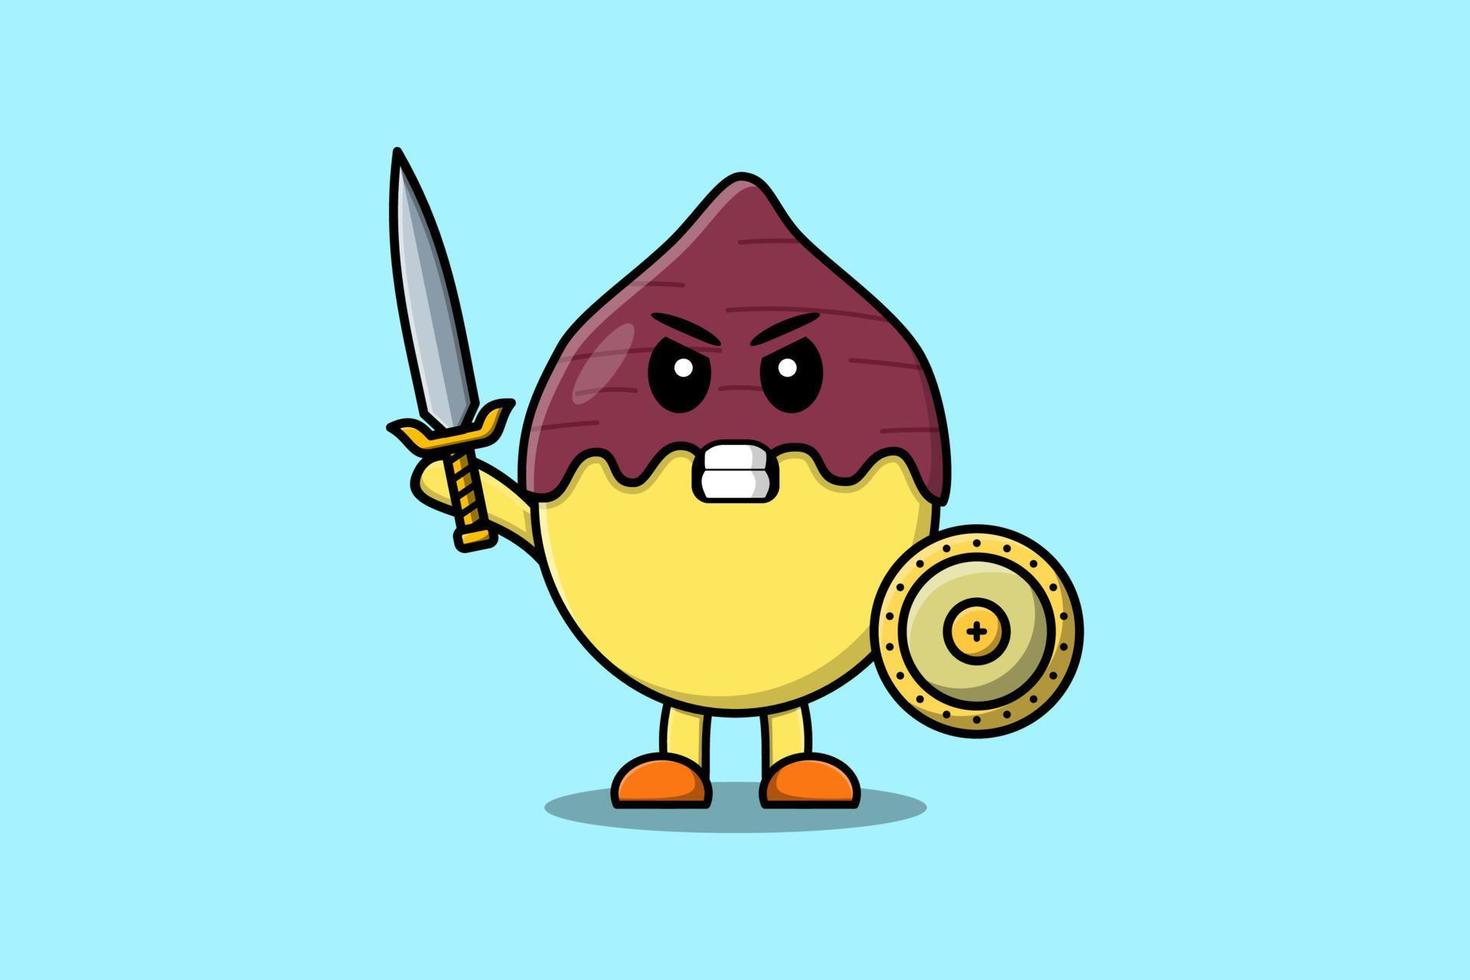 personnage de dessin animé mignon patate douce tenant une épée vecteur